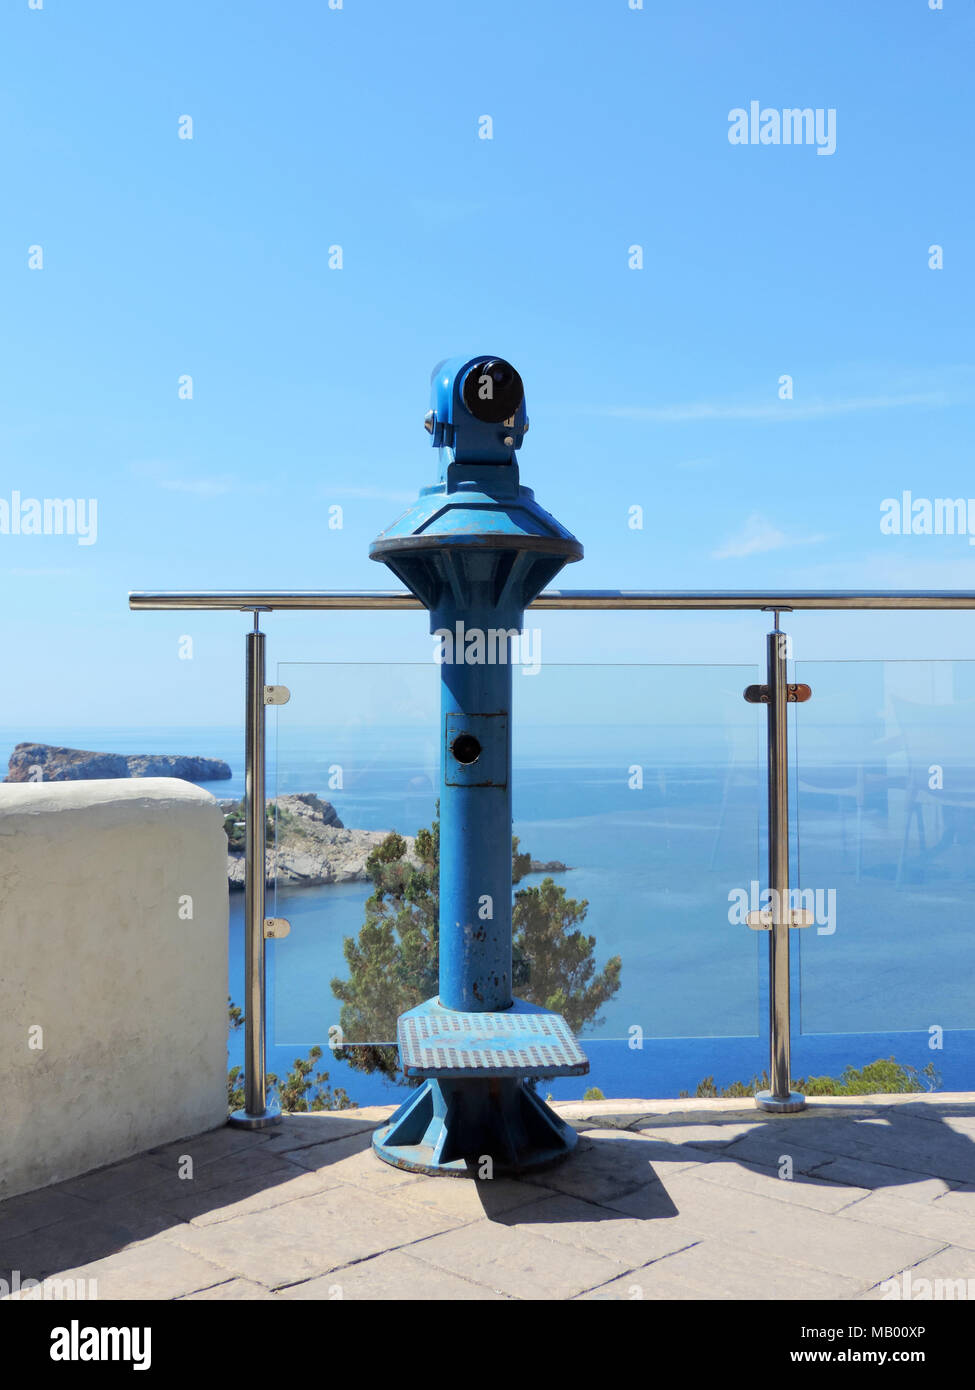 Aussichtspunkt mit Fernglas oder Teleskop. Ibiza Aussichtspunkt auf einer Klippe Küste. Stockfoto